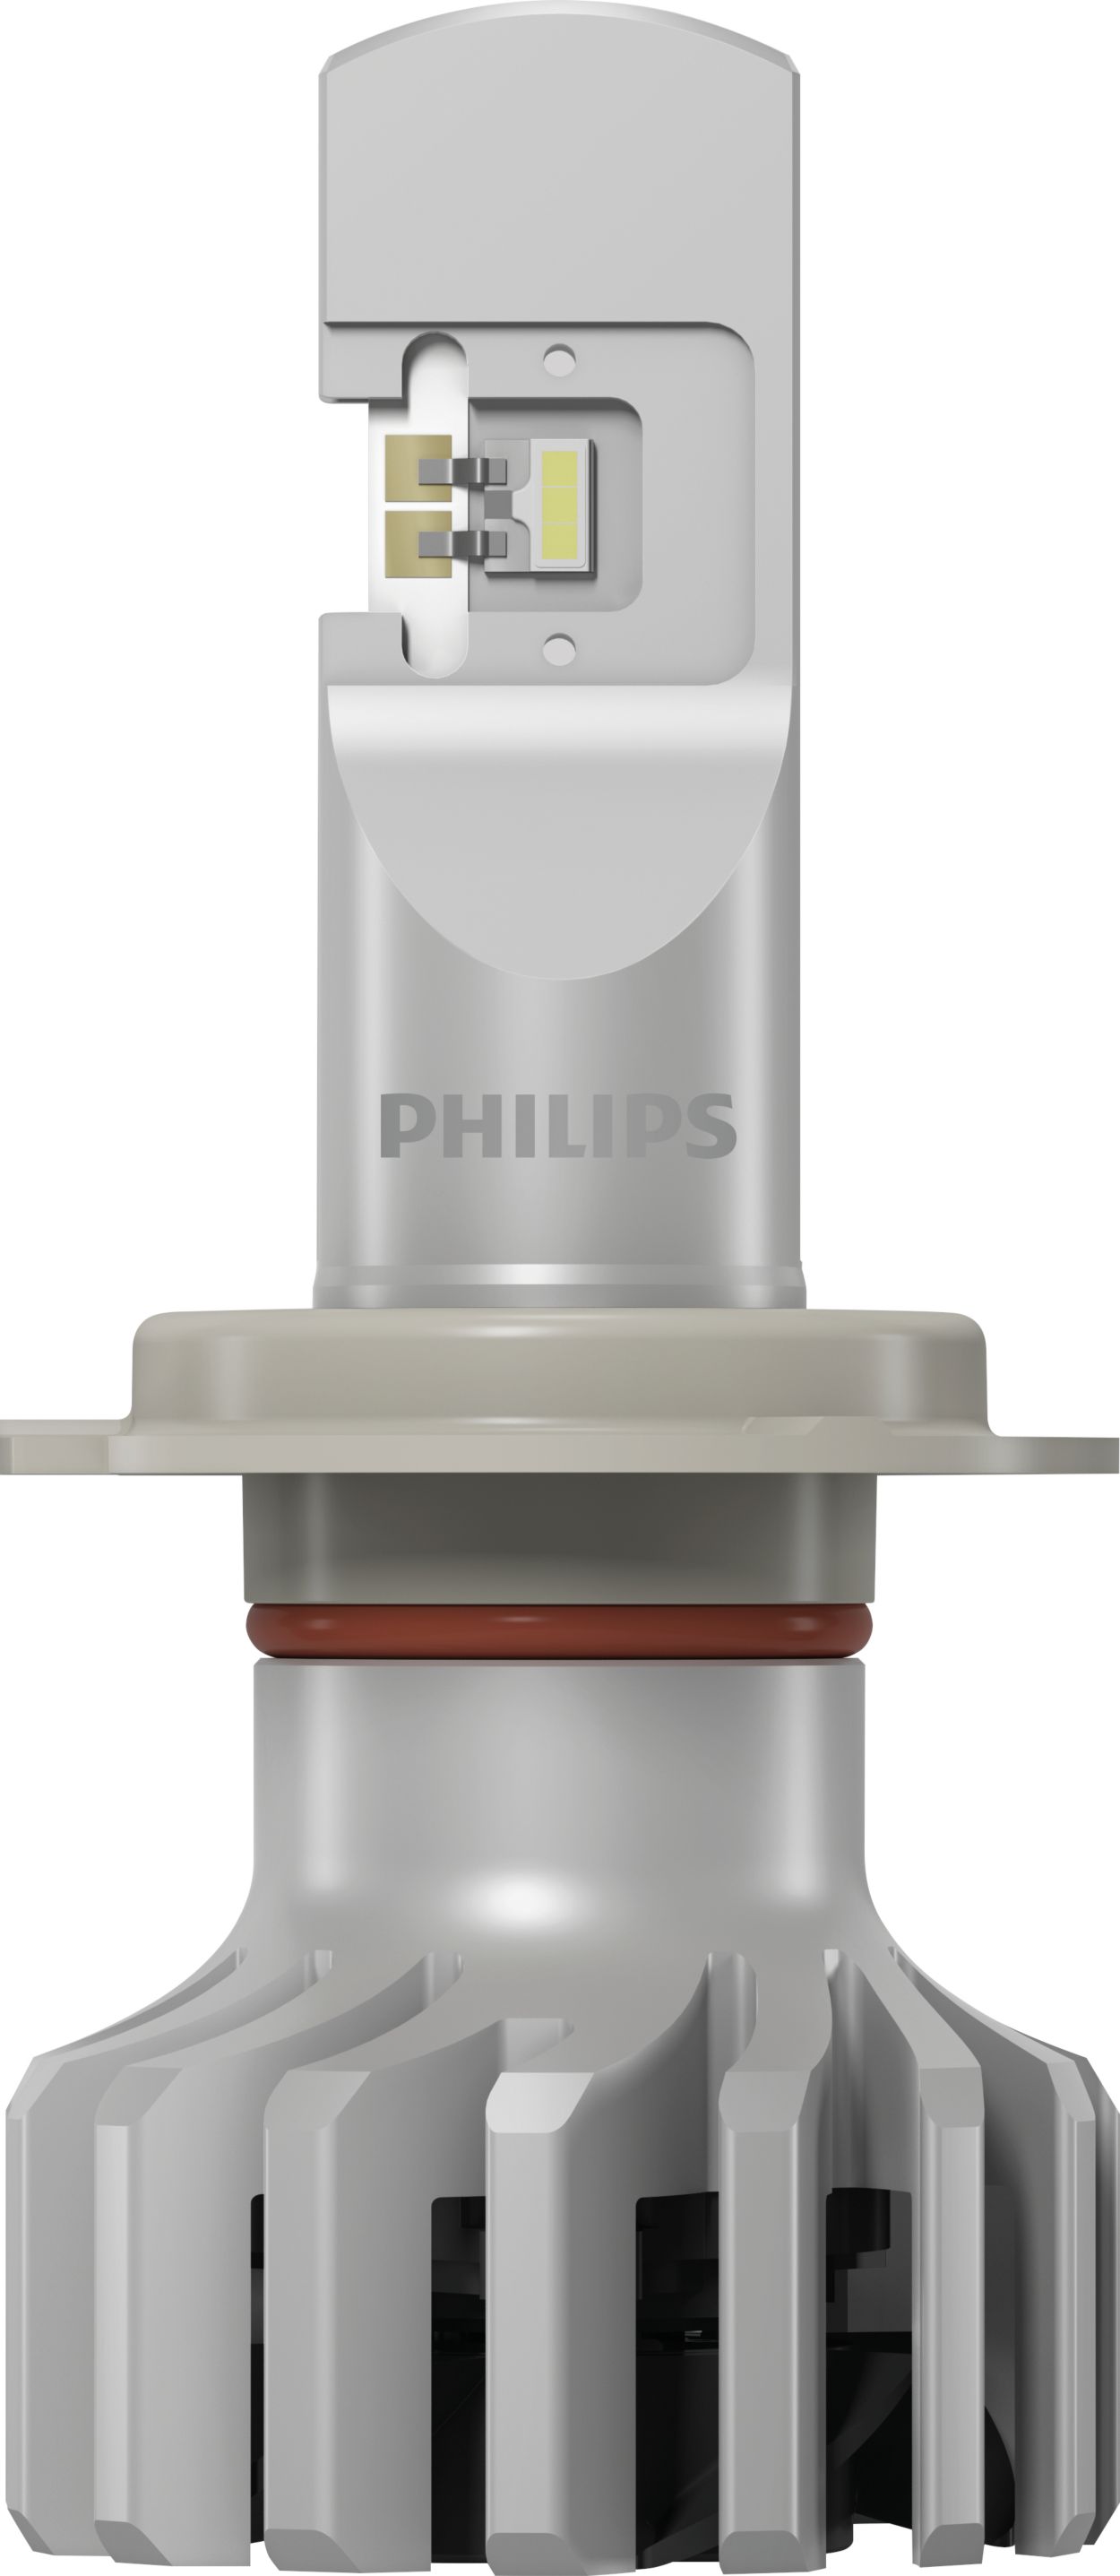 2x Philips Ultinon Pro6000 H4 LED 12V Duo Box Umrüstset +230% Helligkeit  StVZO 